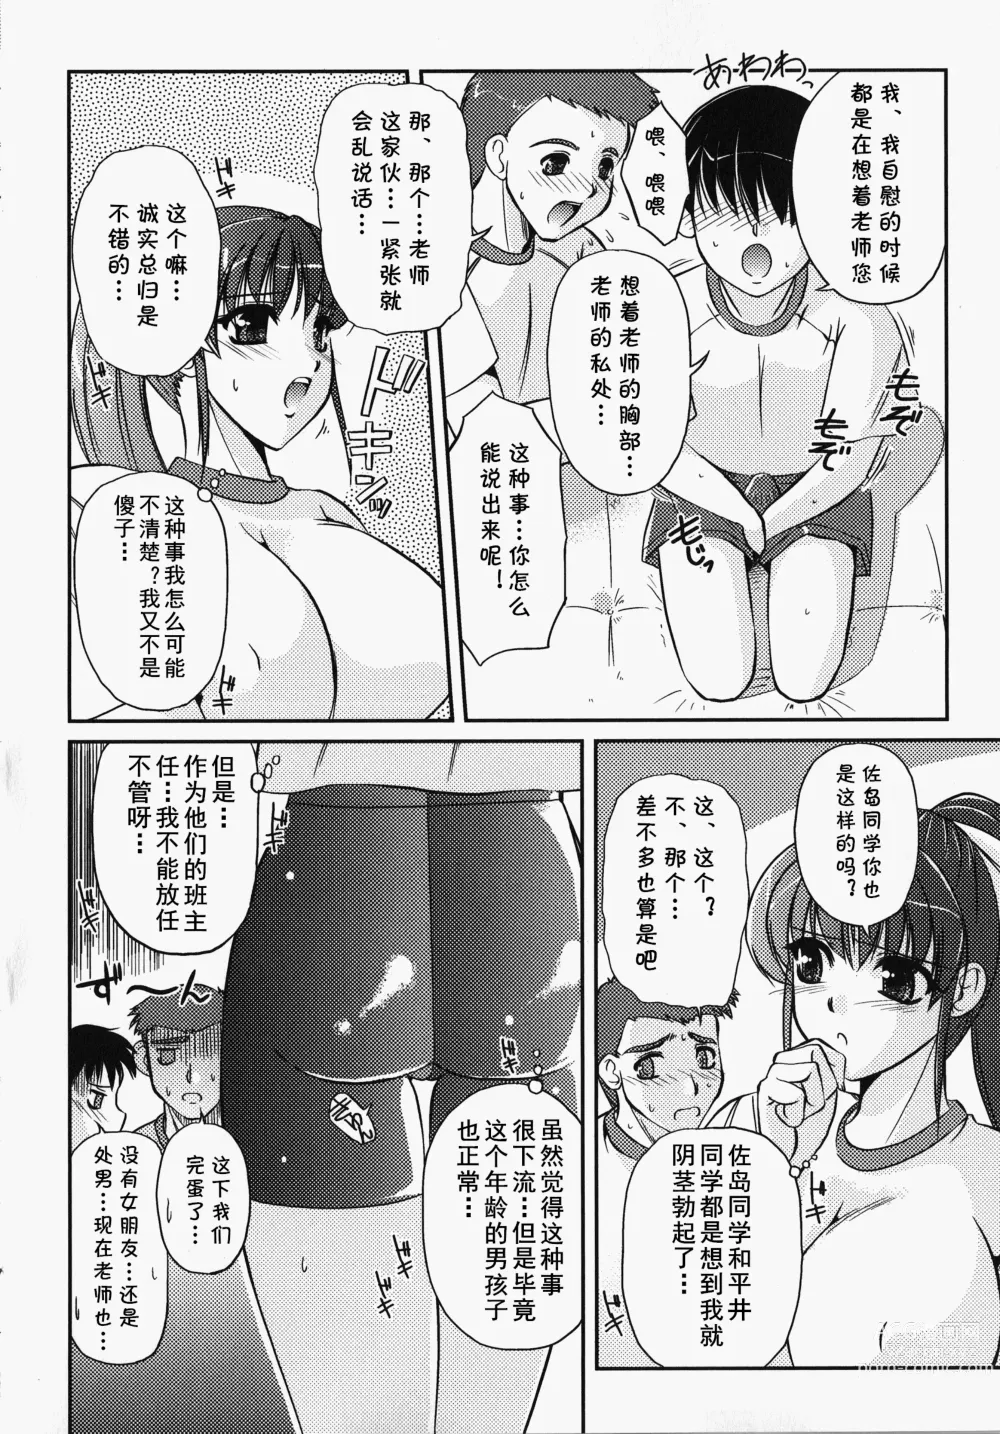 Page 3 of manga Bokura no Sensei  to  Himitsu  Jisshuu